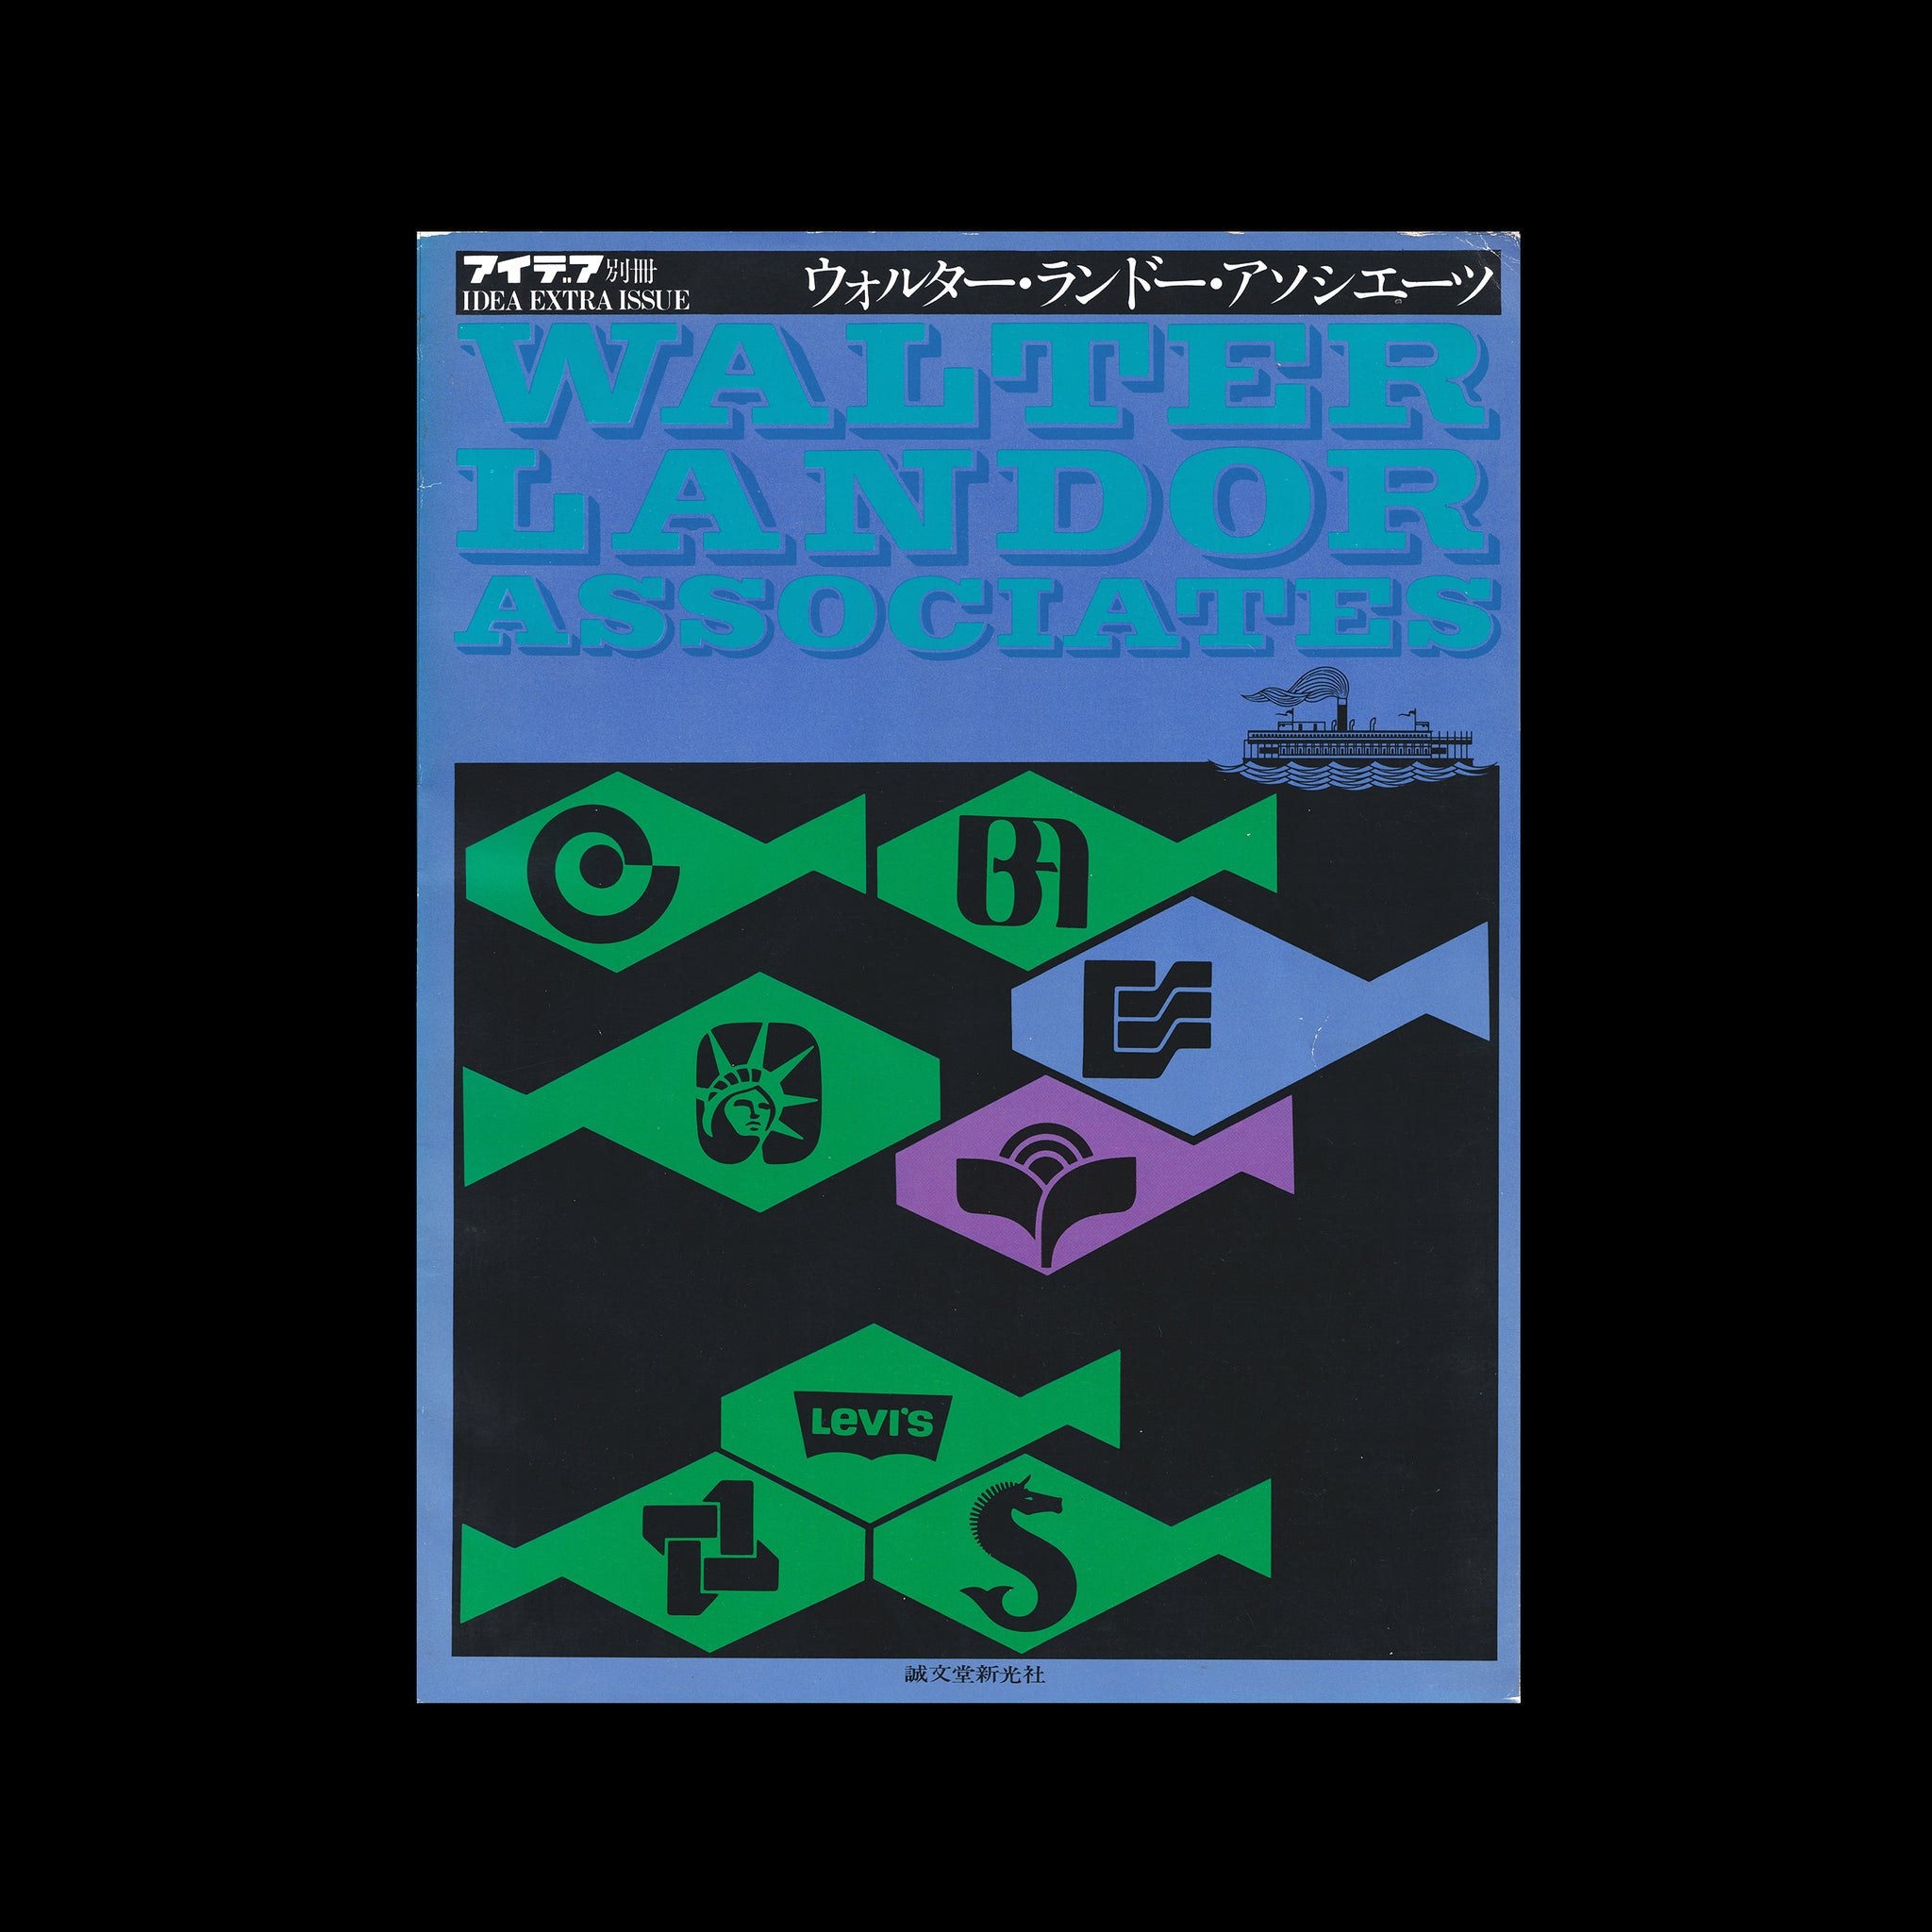 IDEA Extra Issue: Walter Landor Associates, 1977